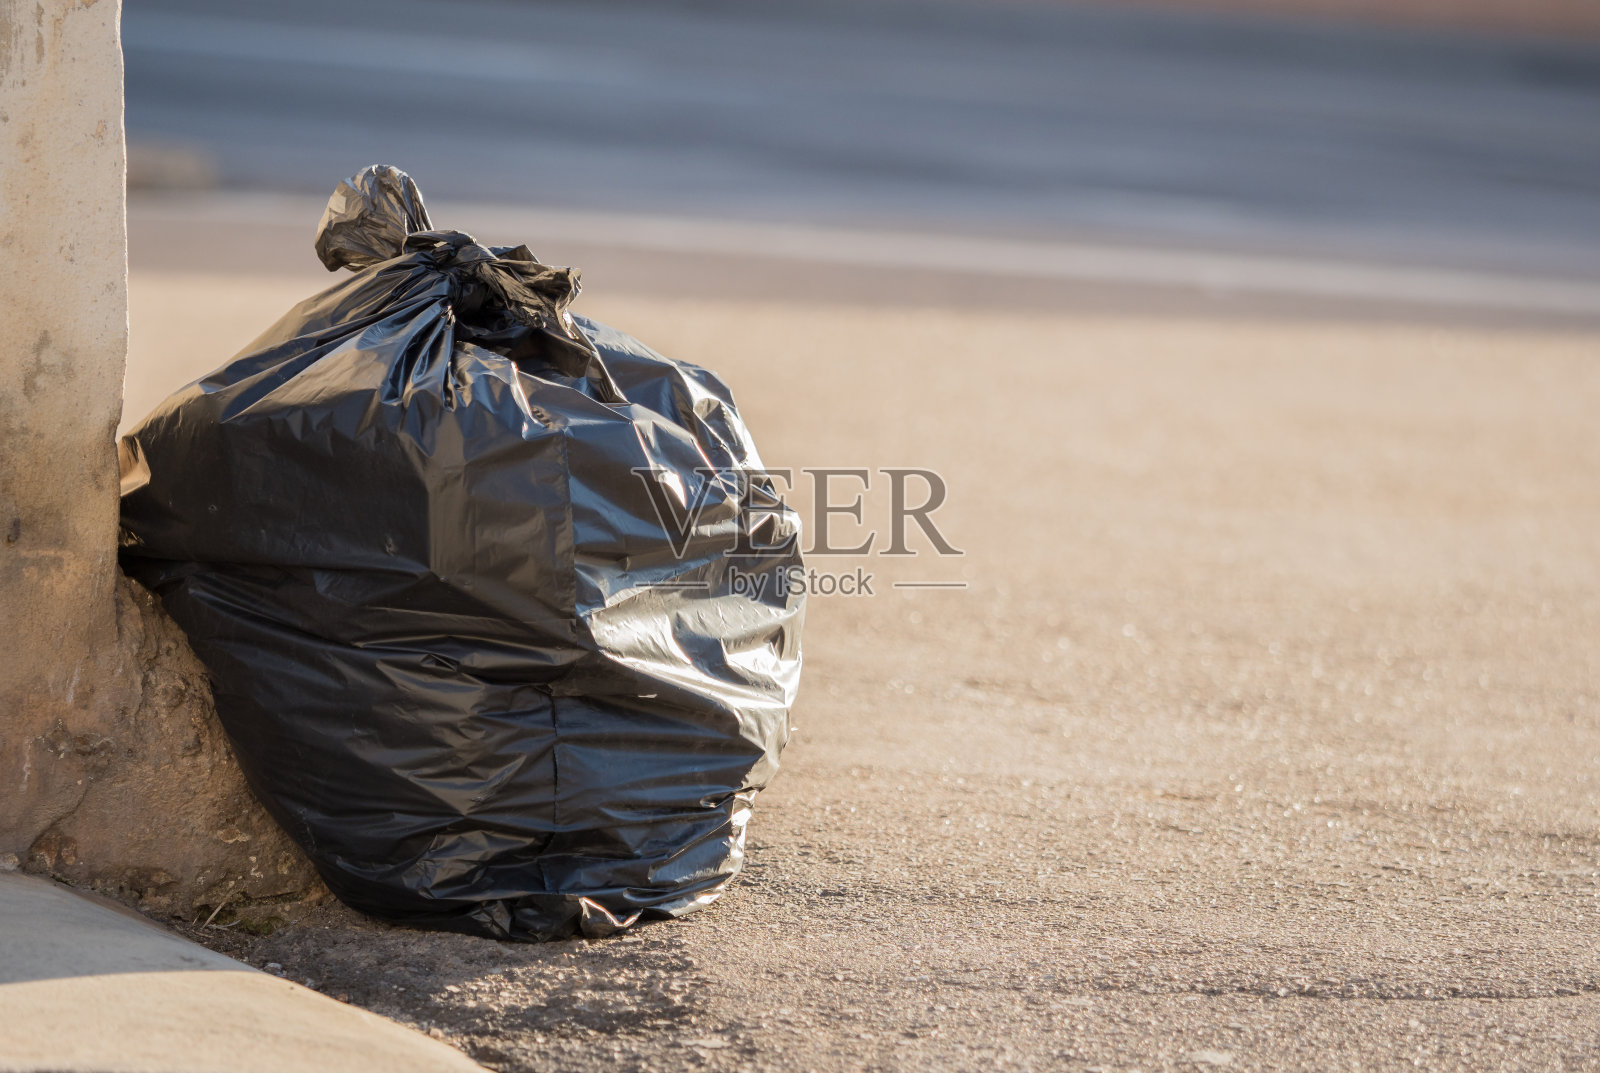 黑色垃圾袋躺在路上照片摄影图片